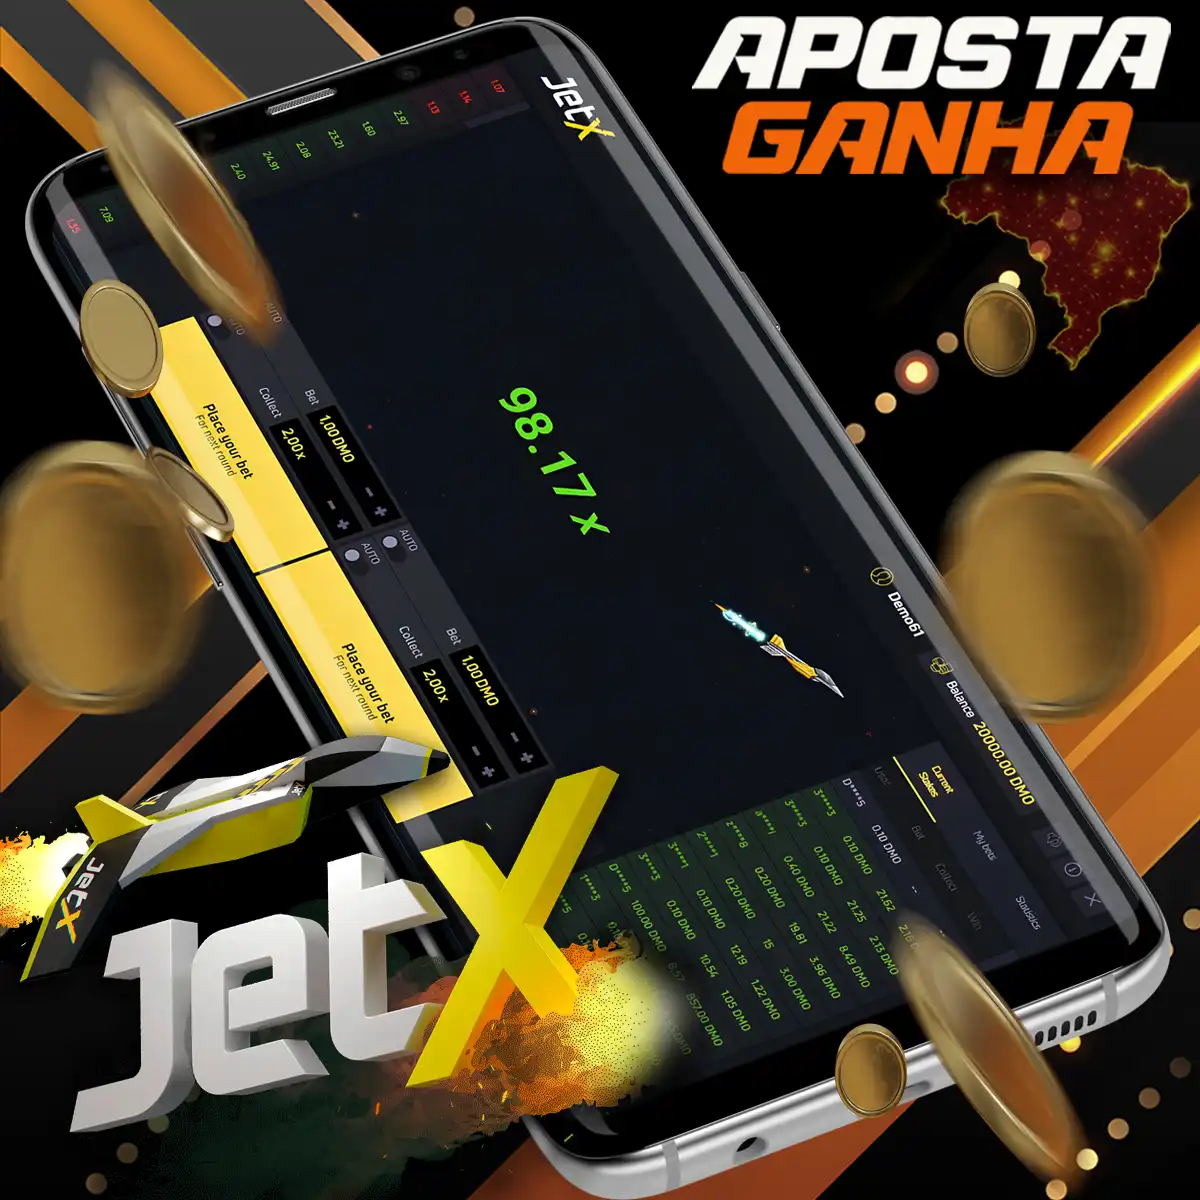 O popular jogo JetX no Cassino Apocta Ganha app no Brasil